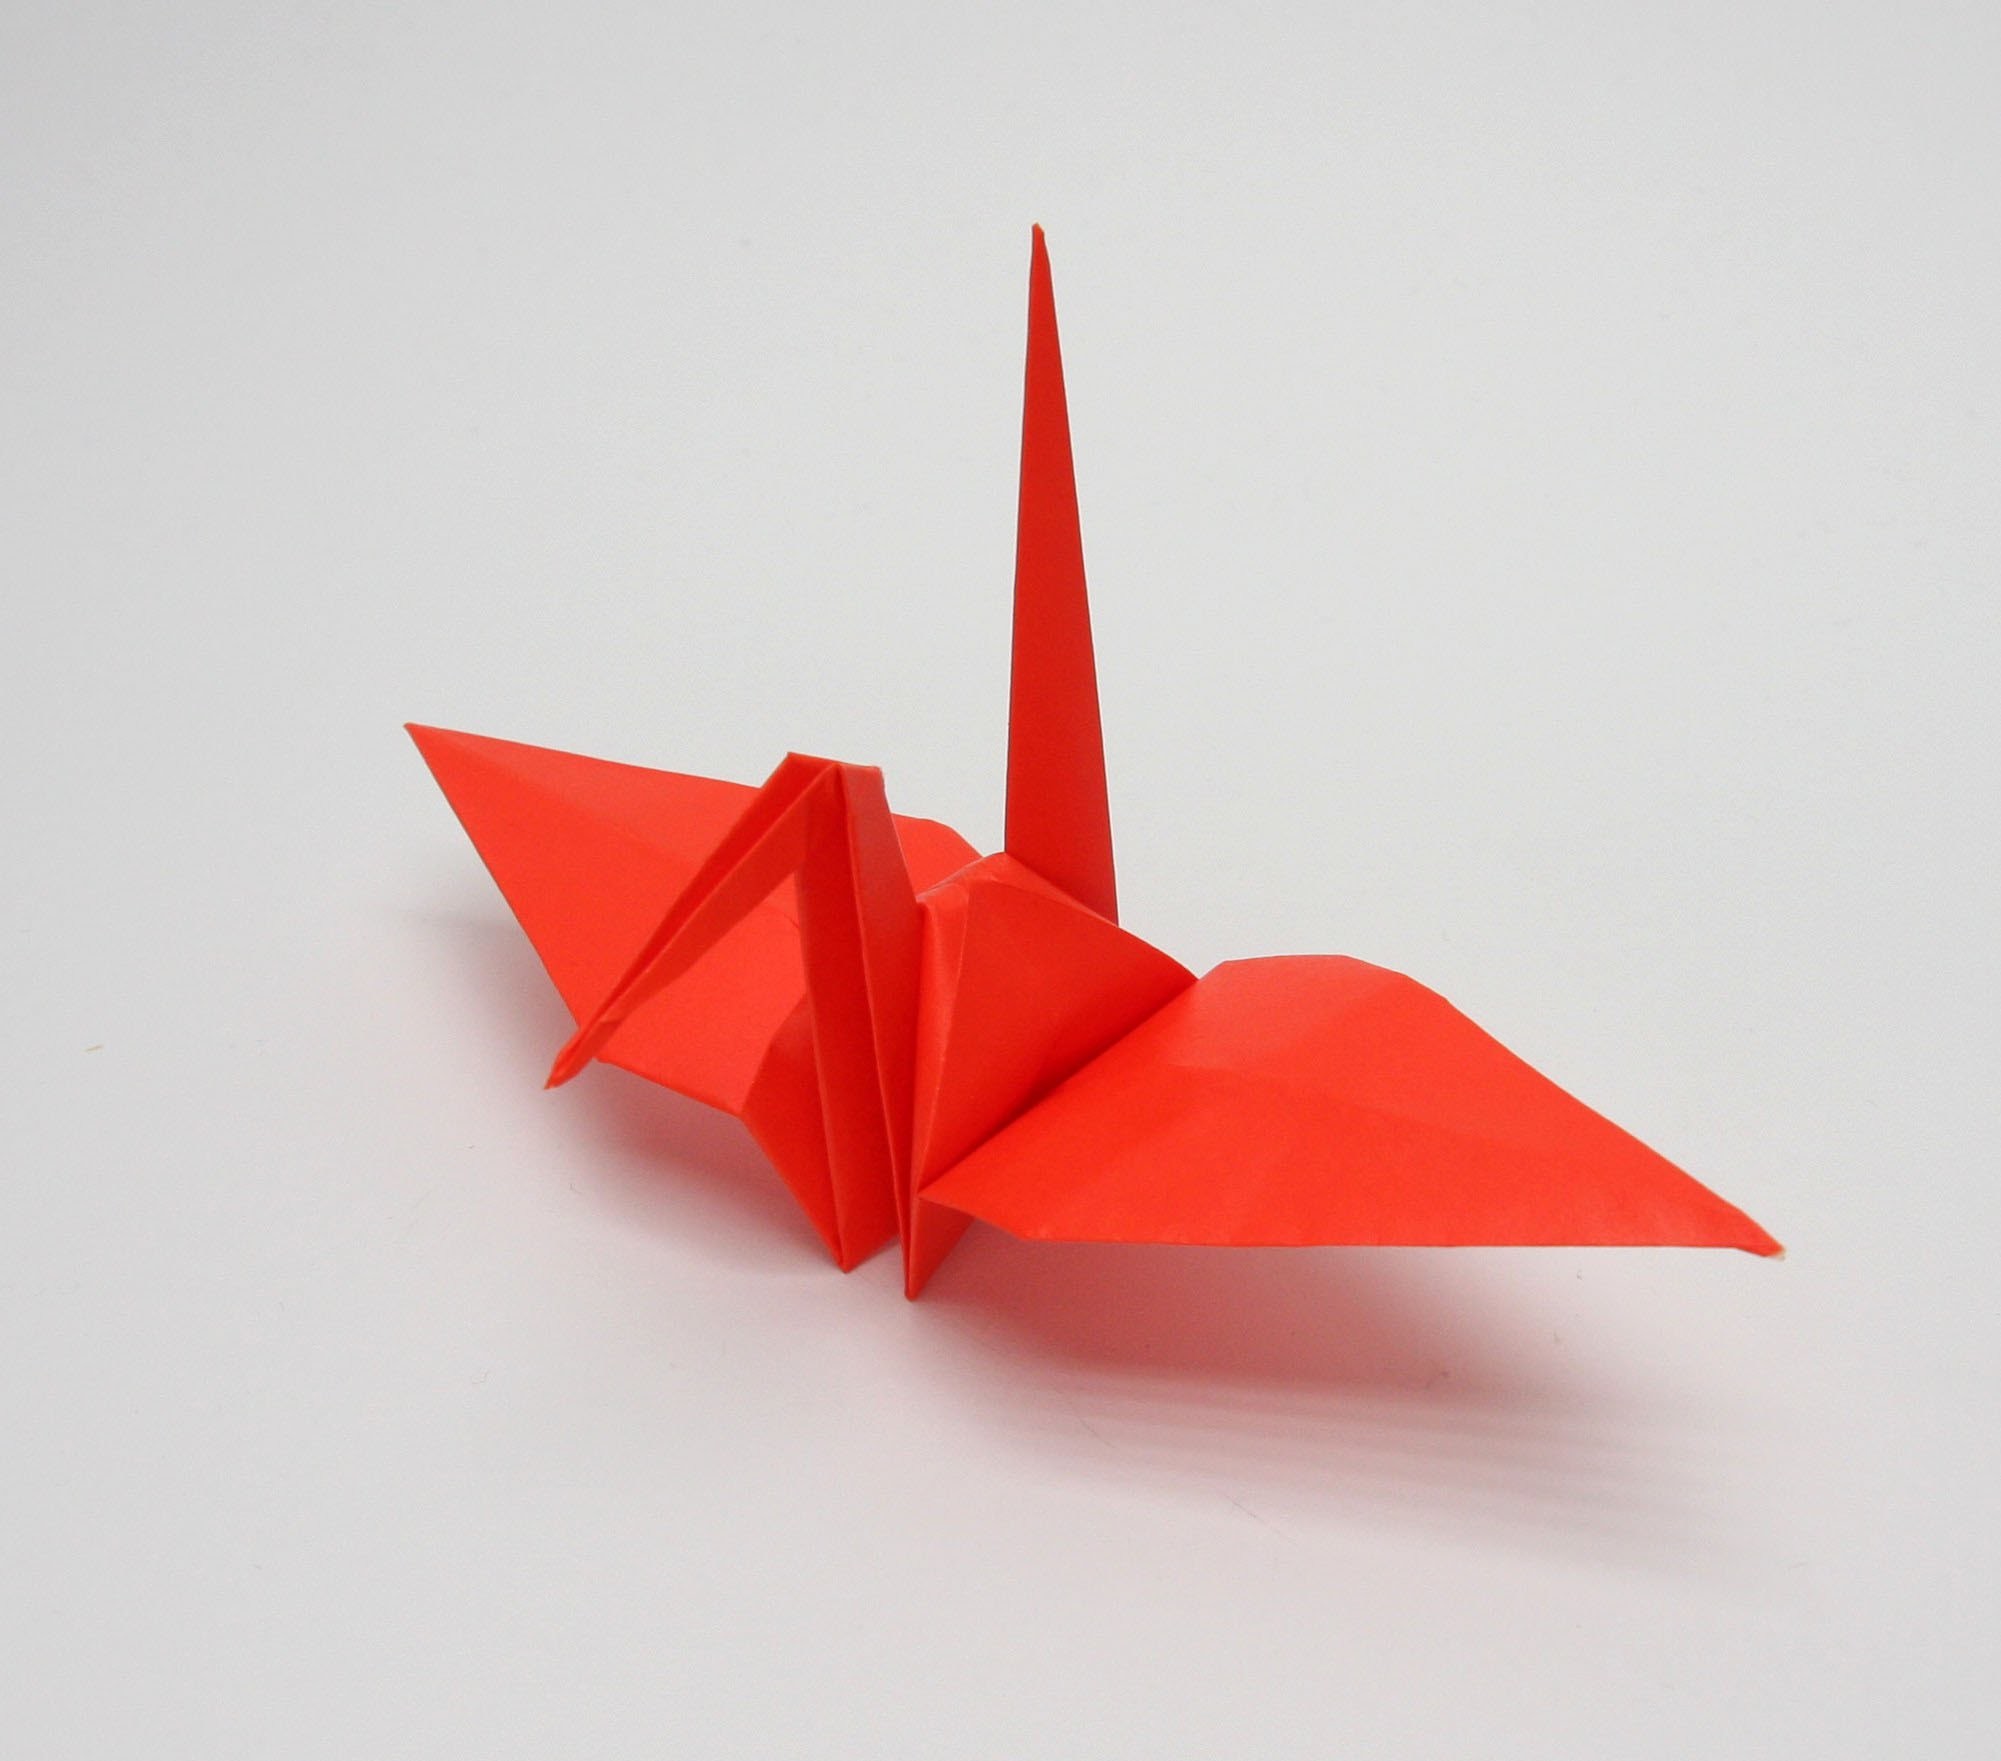 ¡Vamos a hacer origami! Tradicional ave tsuru de Japón